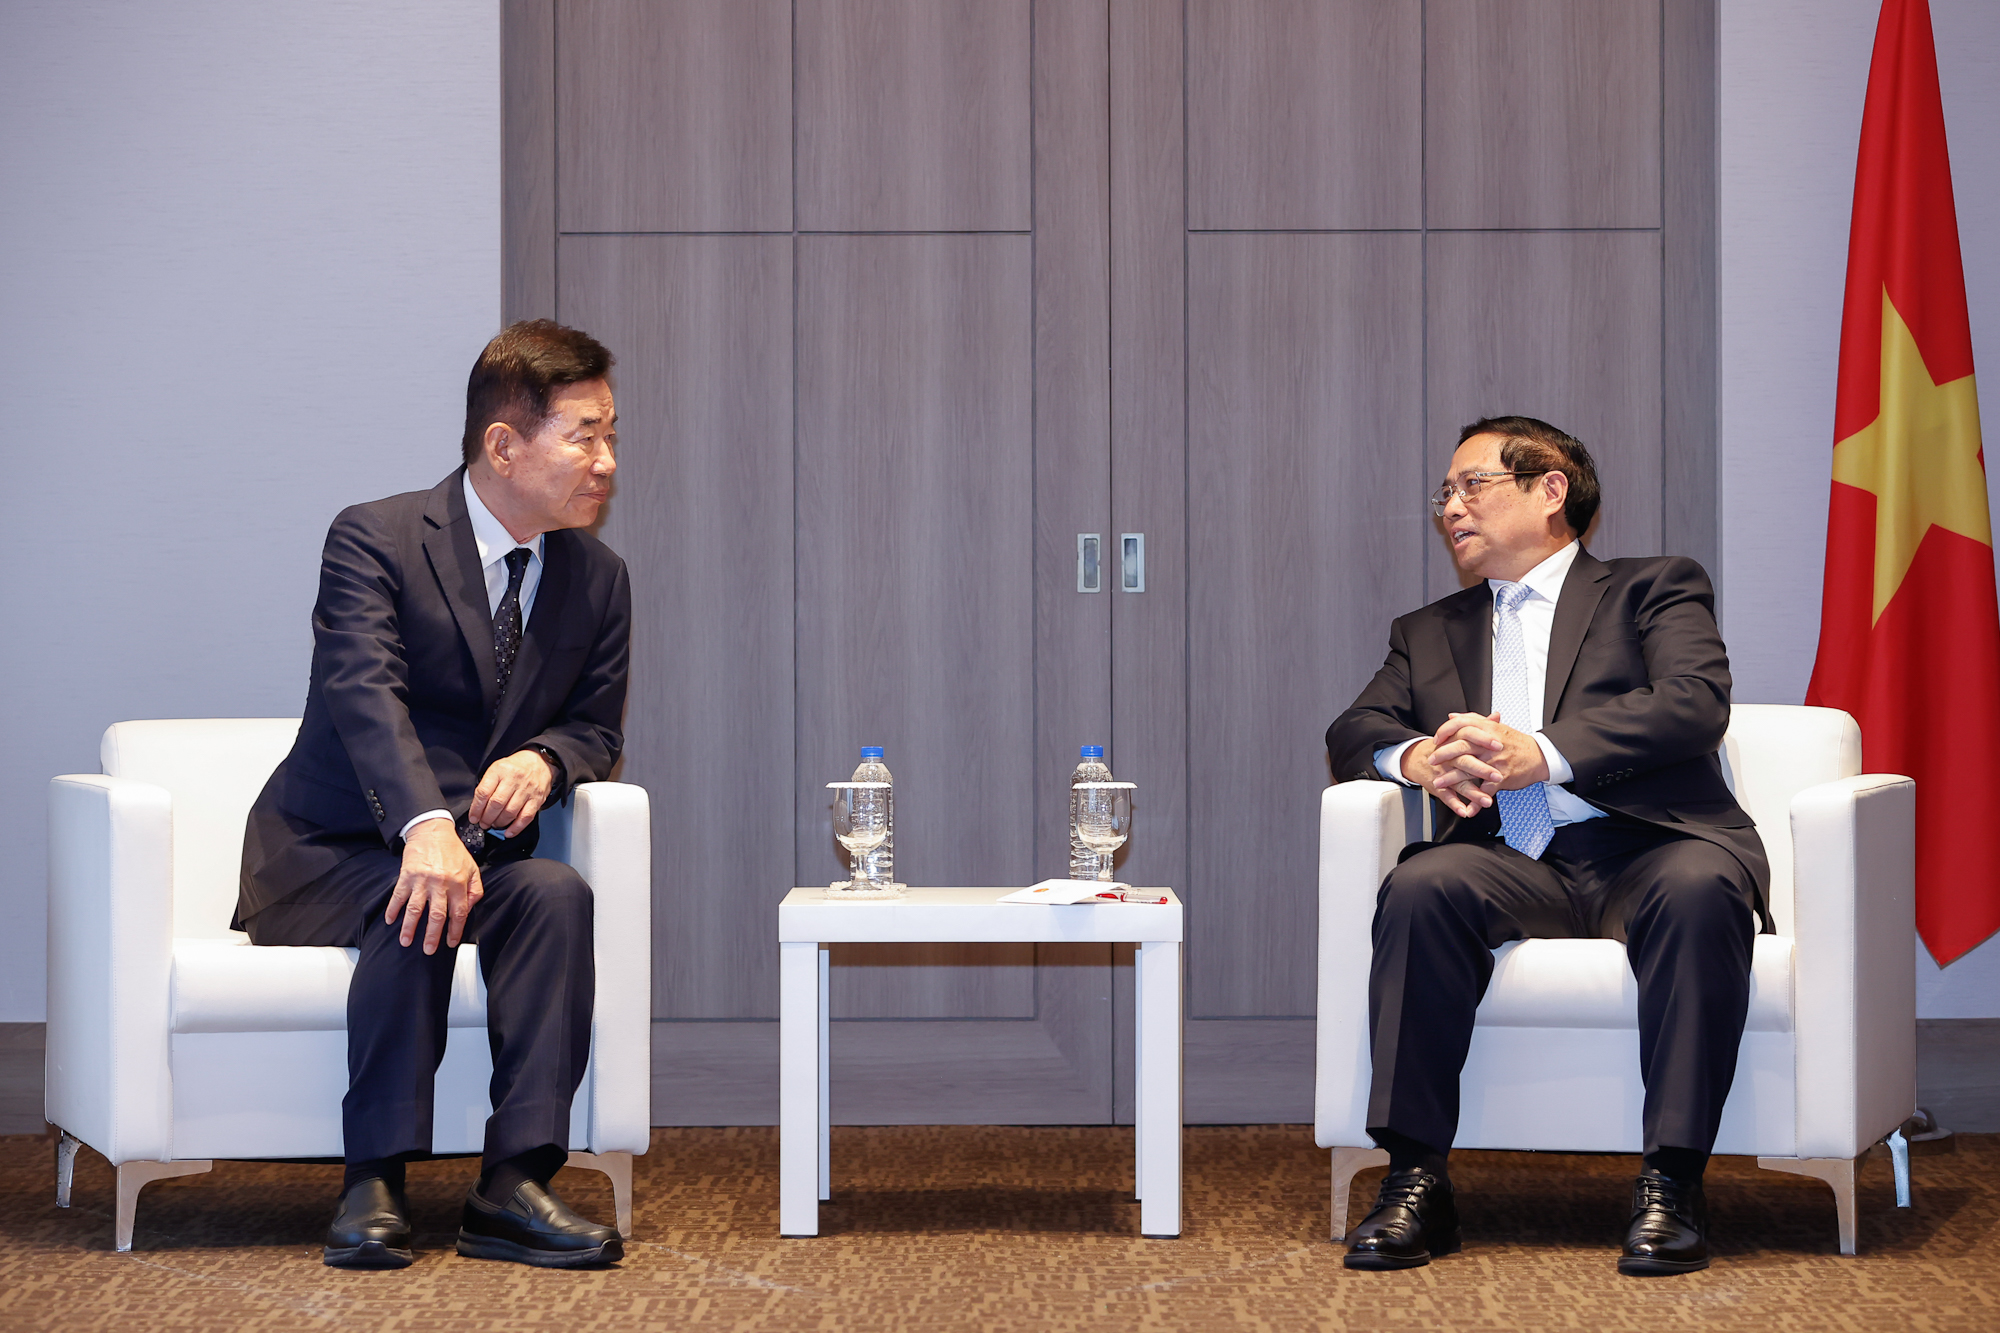 Thủ tướng Phạm Minh Chính bày tỏ trân trọng, cảm ơn những tình cảm dành cho Việt Nam và đóng góp quan trọng của ông Kim Jin Pyo cho quan hệ hai nước trên các cương vị công tác - Ảnh: VGP/Nhật Bắc